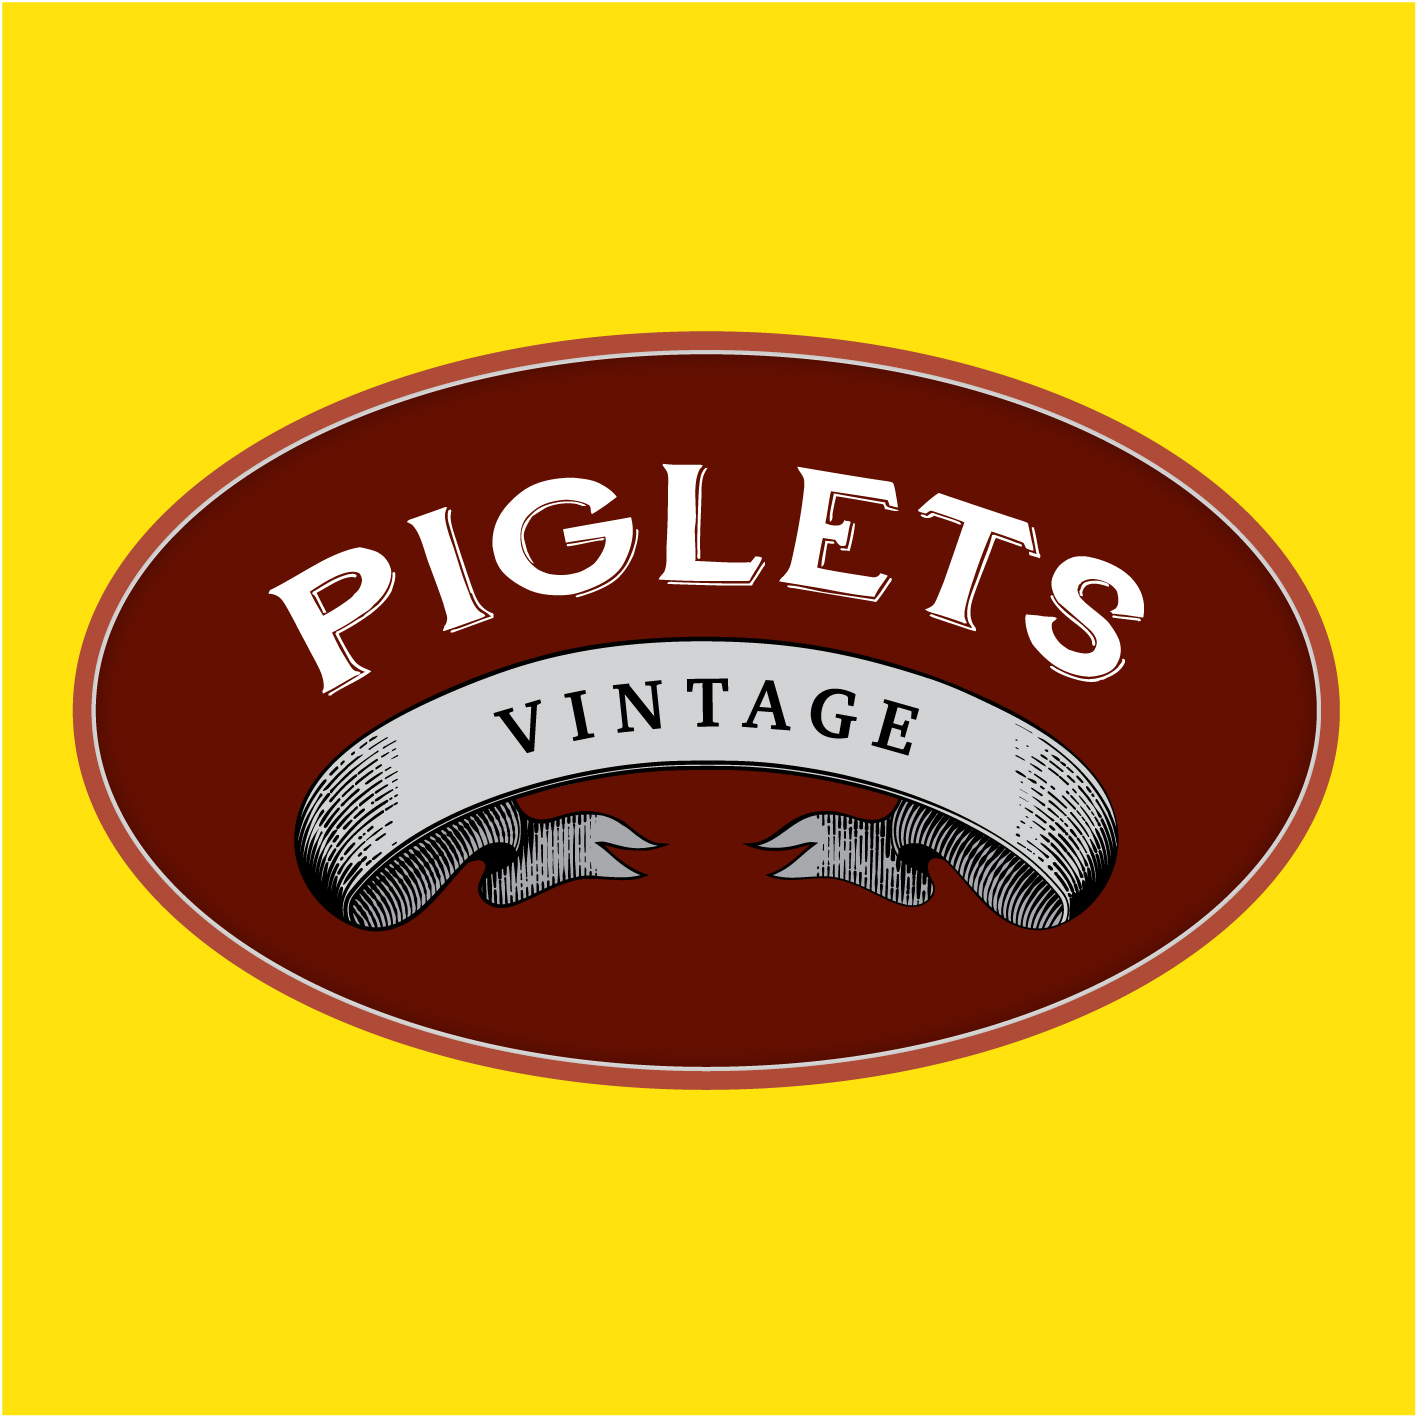 Piglets vintage